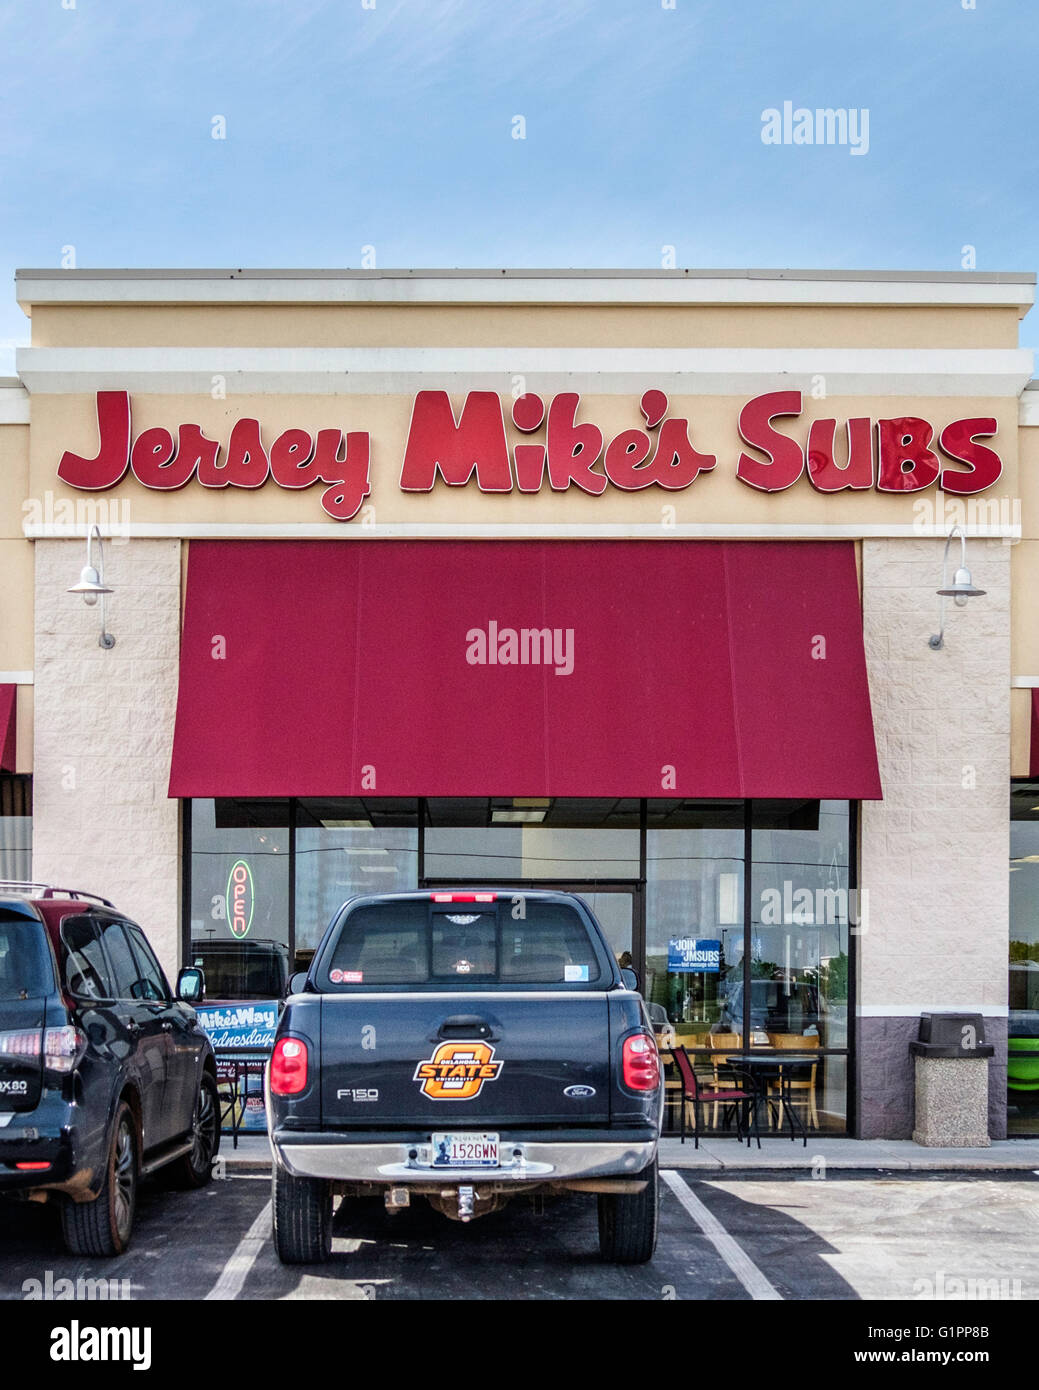 La devanture de Jersey Mike's Subs. Oklahoma City, Oklahoma, USA. Banque D'Images